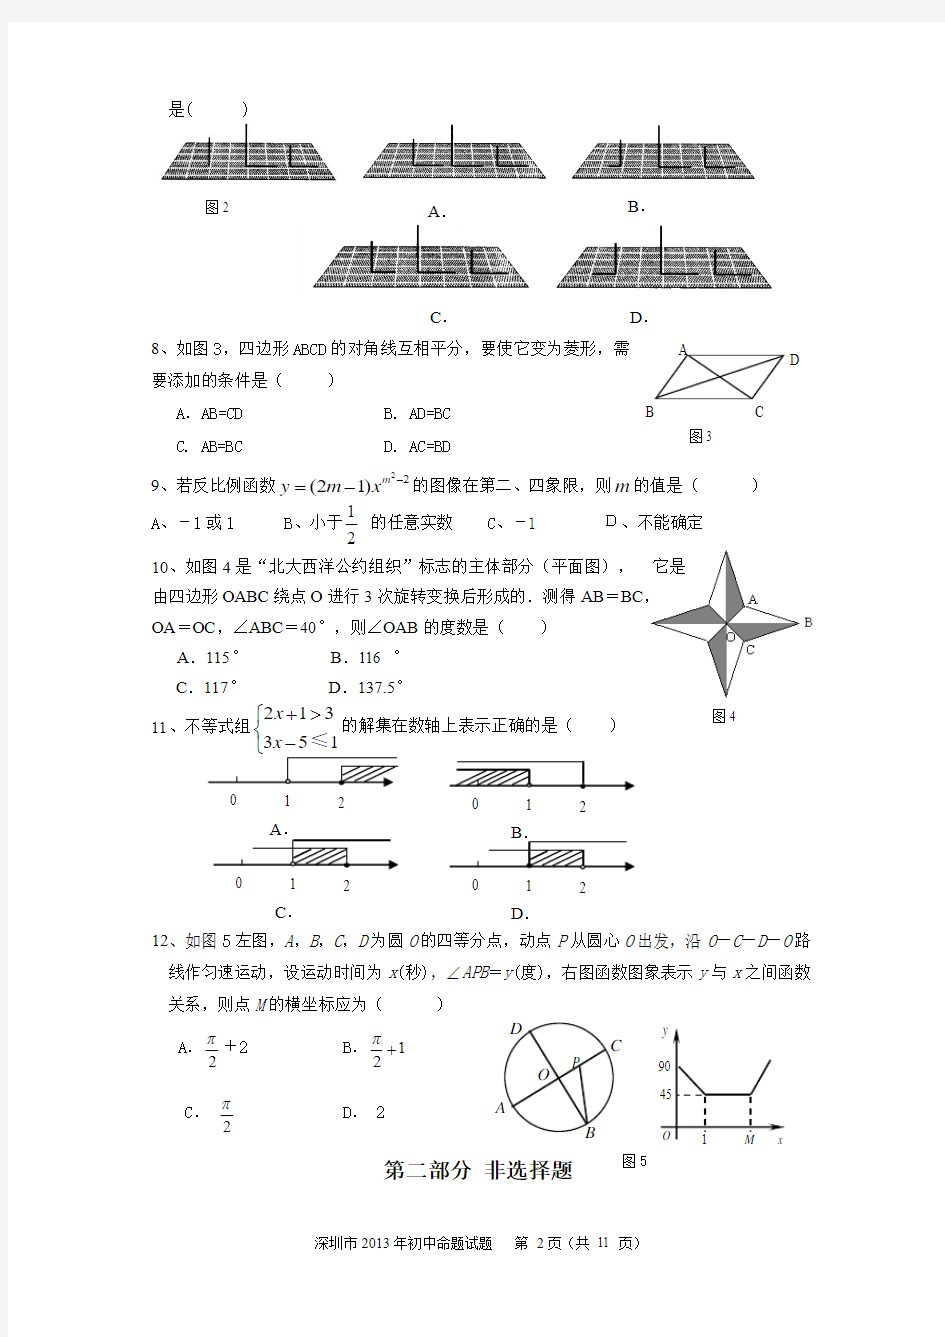 深圳市2013年中考数学模拟试题(包含答案和评分标准)